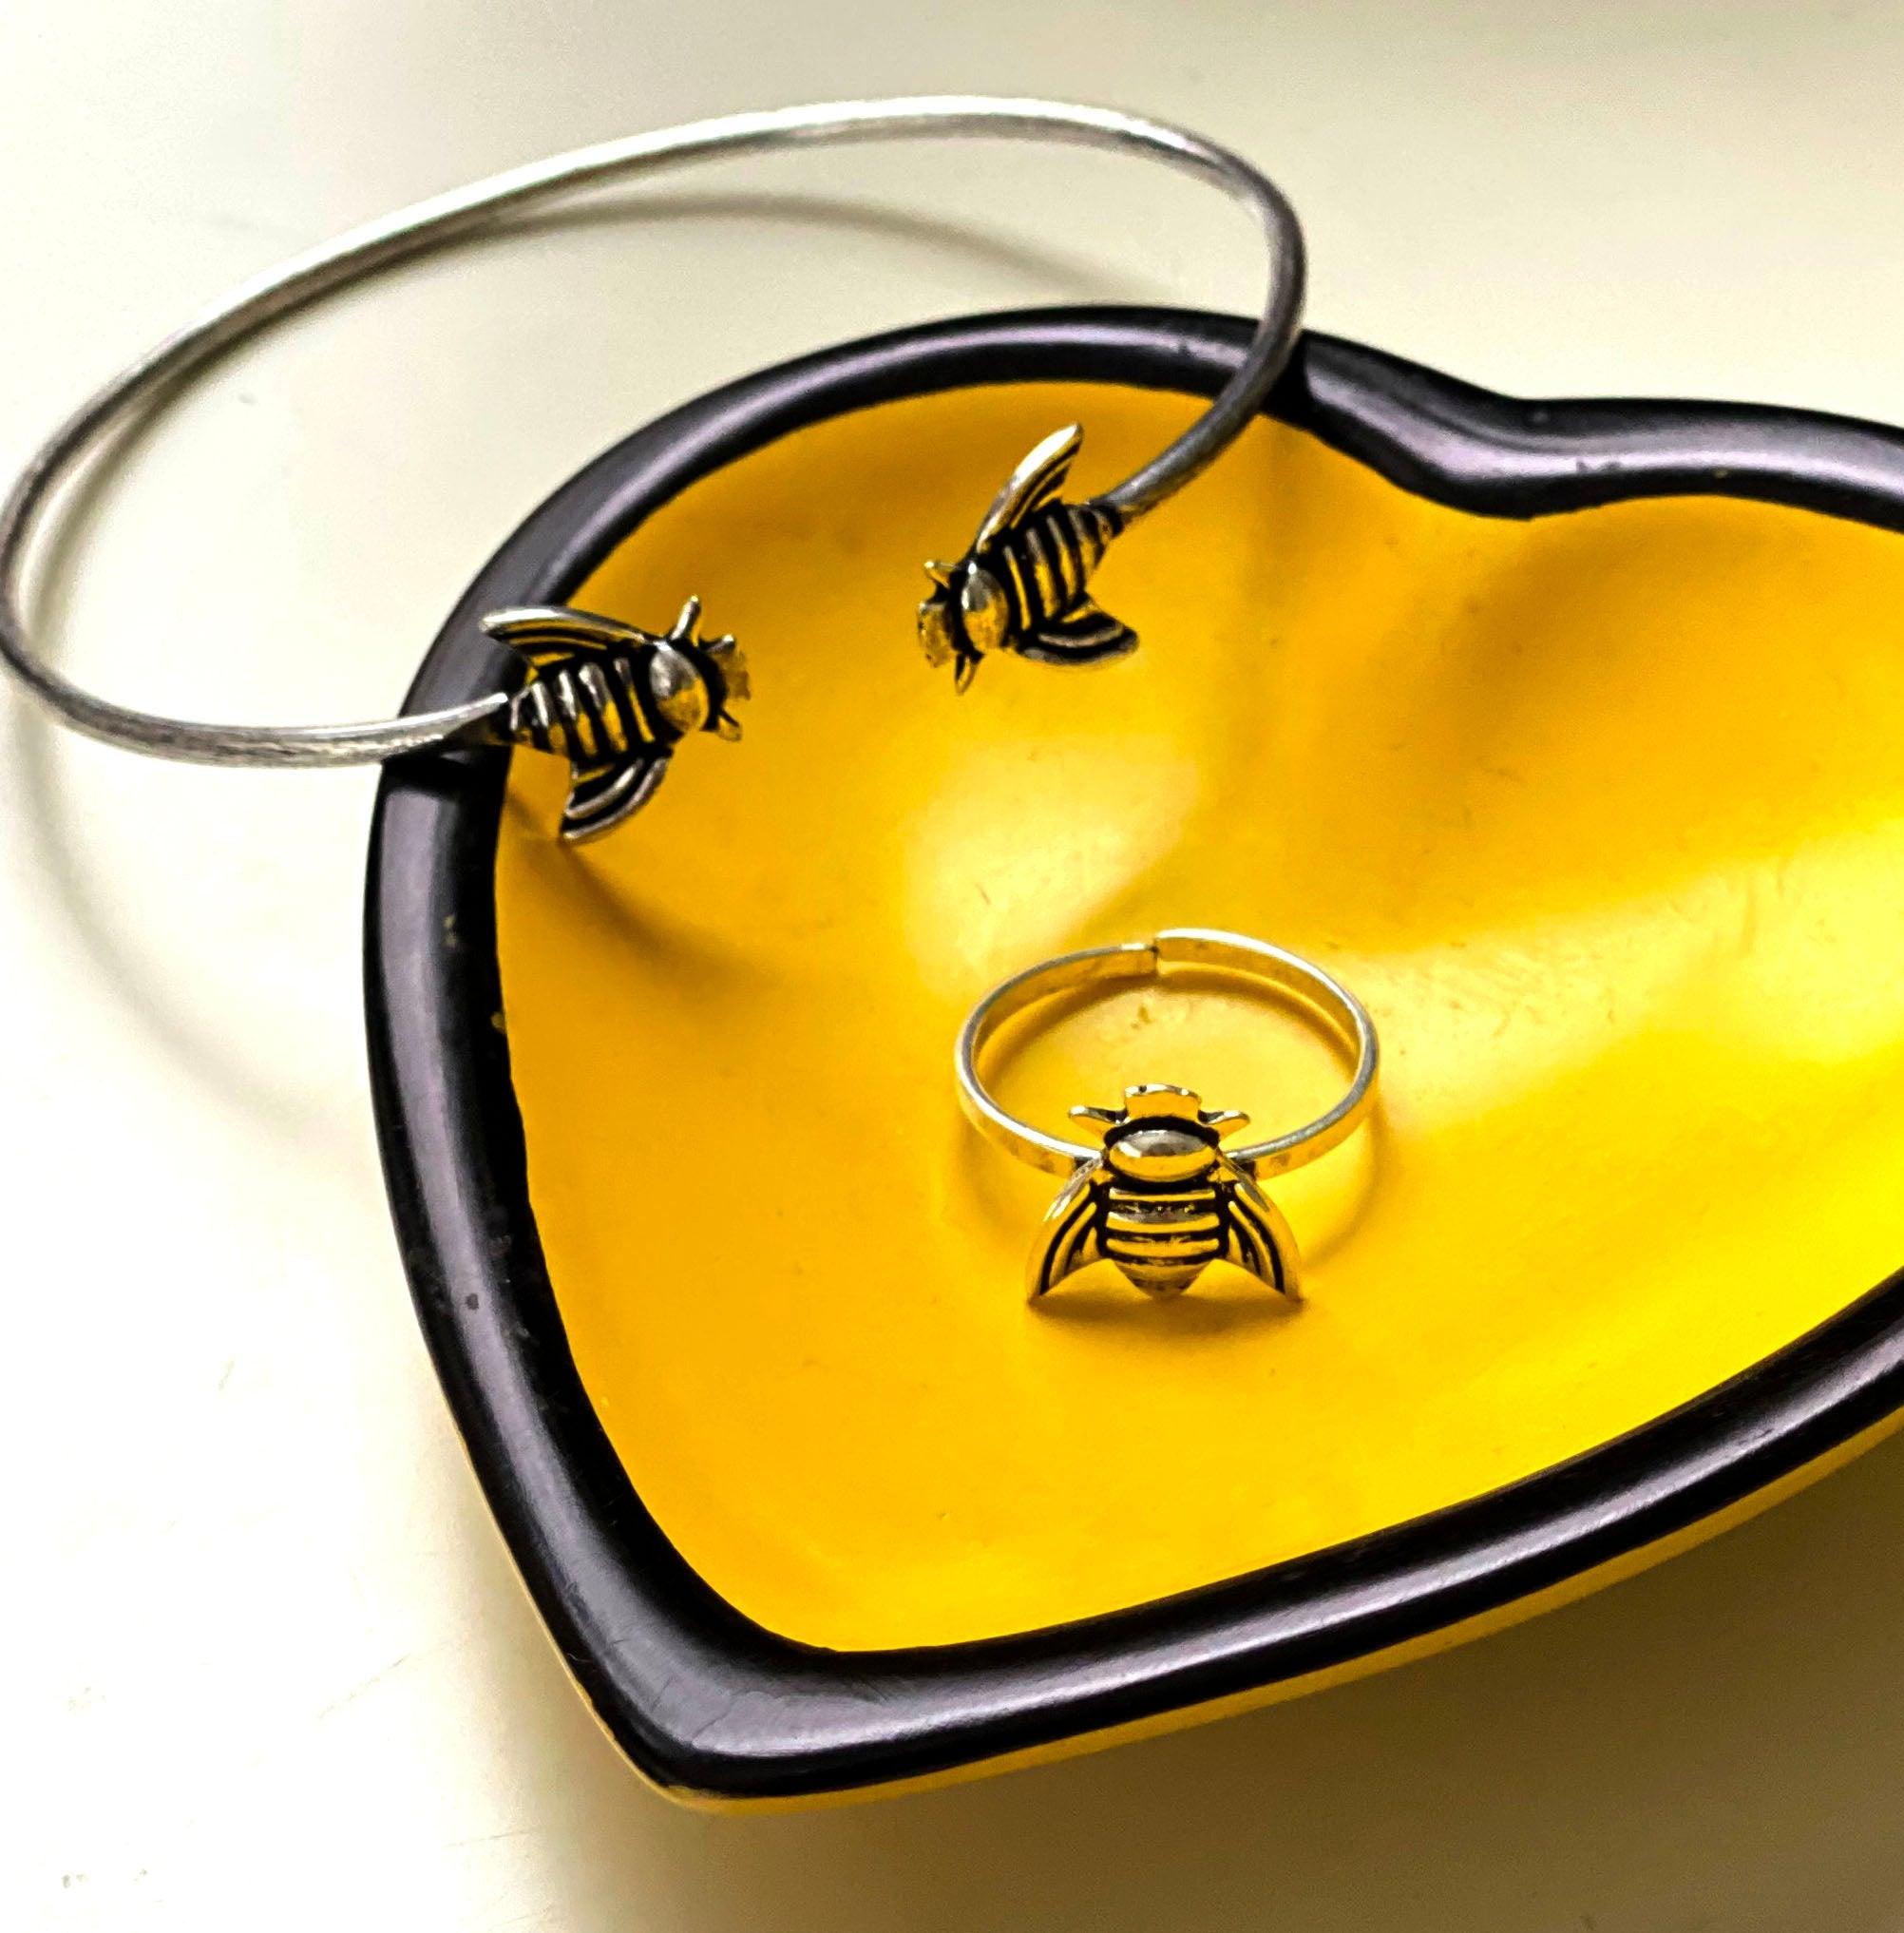 Honeybee Cuff Bracelet - Flyclothing LLC